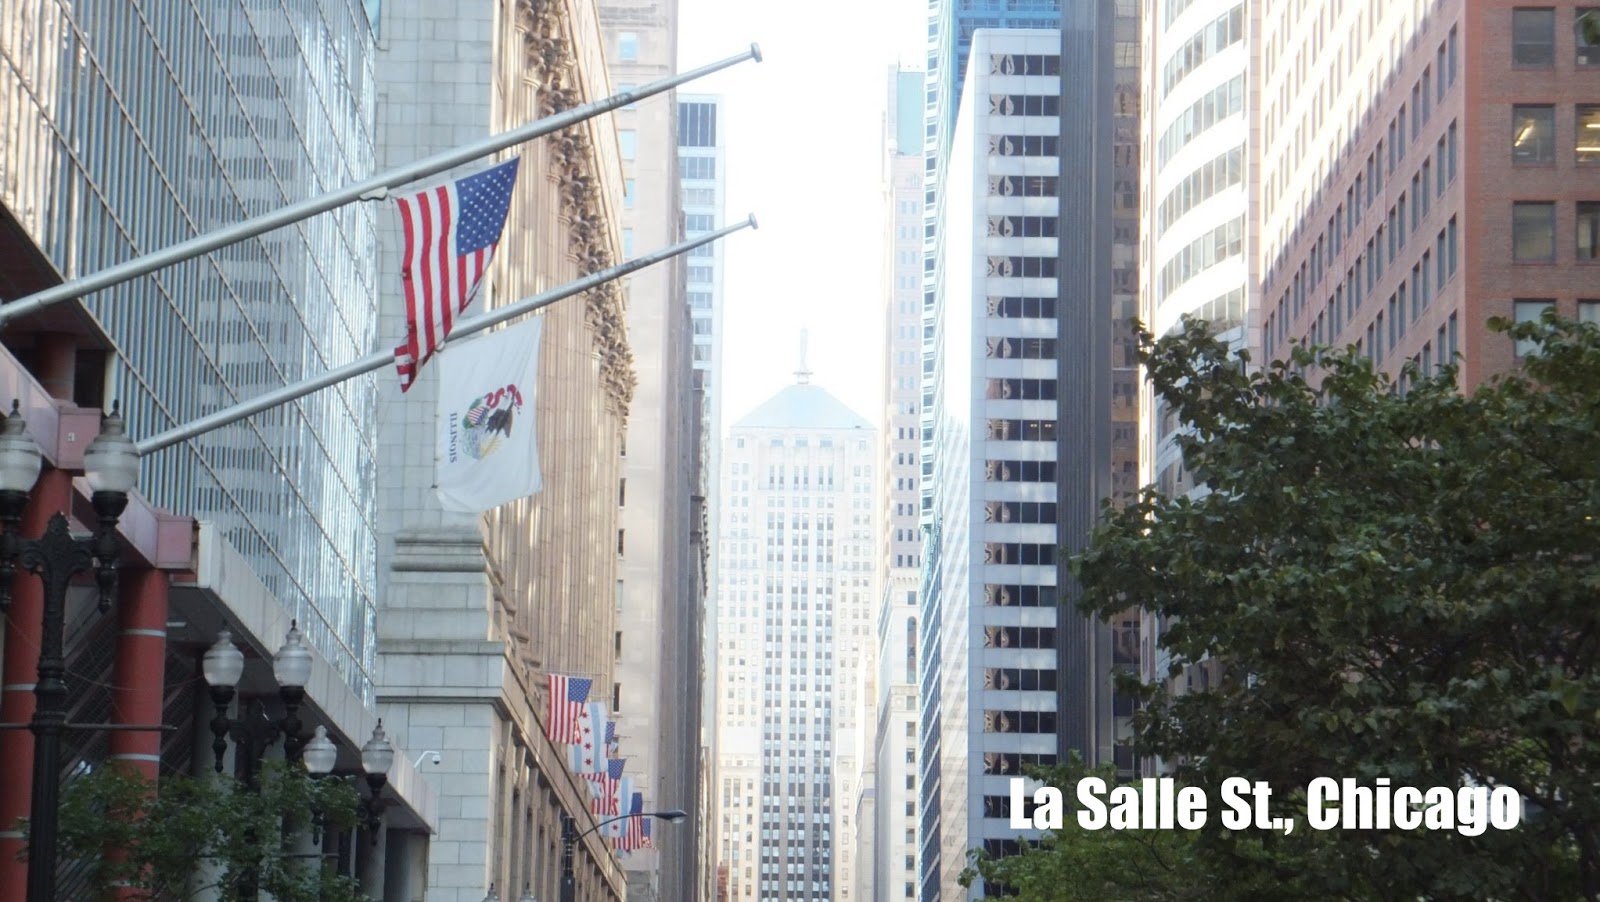 La Salle St., Chicago, Elisa N, Blog de Viajes, Lifestyle, Travel